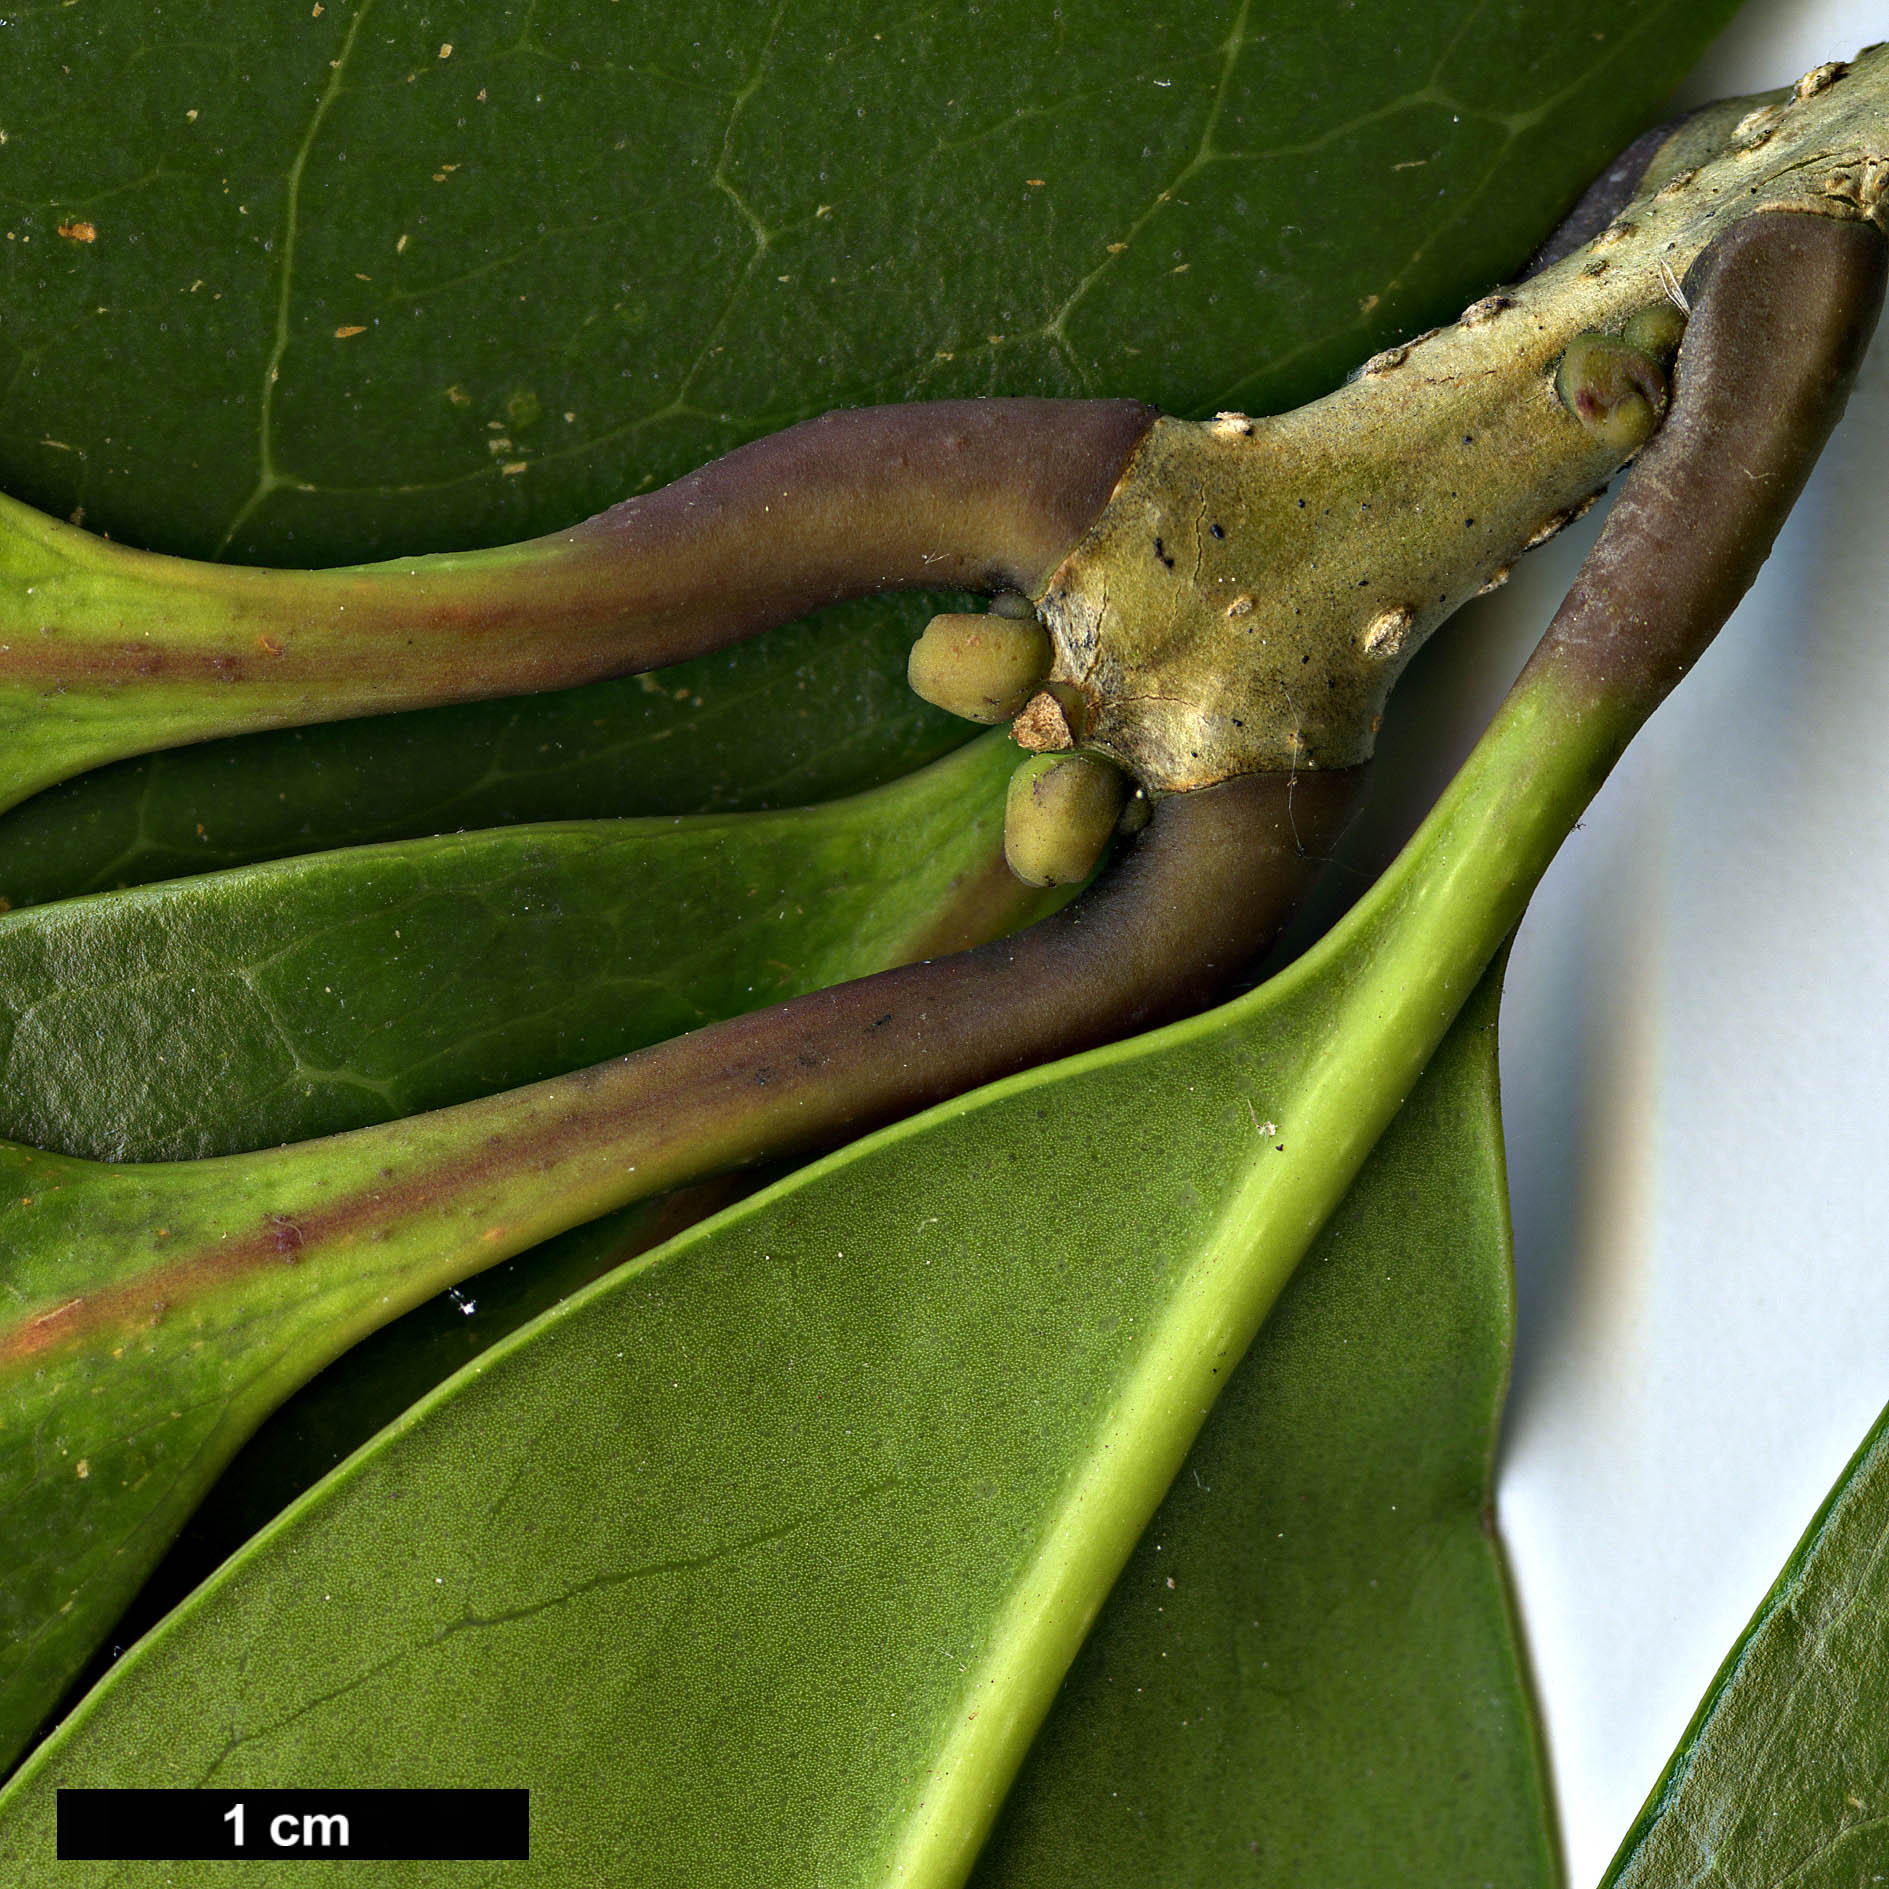 High resolution image: Family: Oleaceae - Genus: Osmanthus - Taxon: marginatus - SpeciesSub: var. marginatus